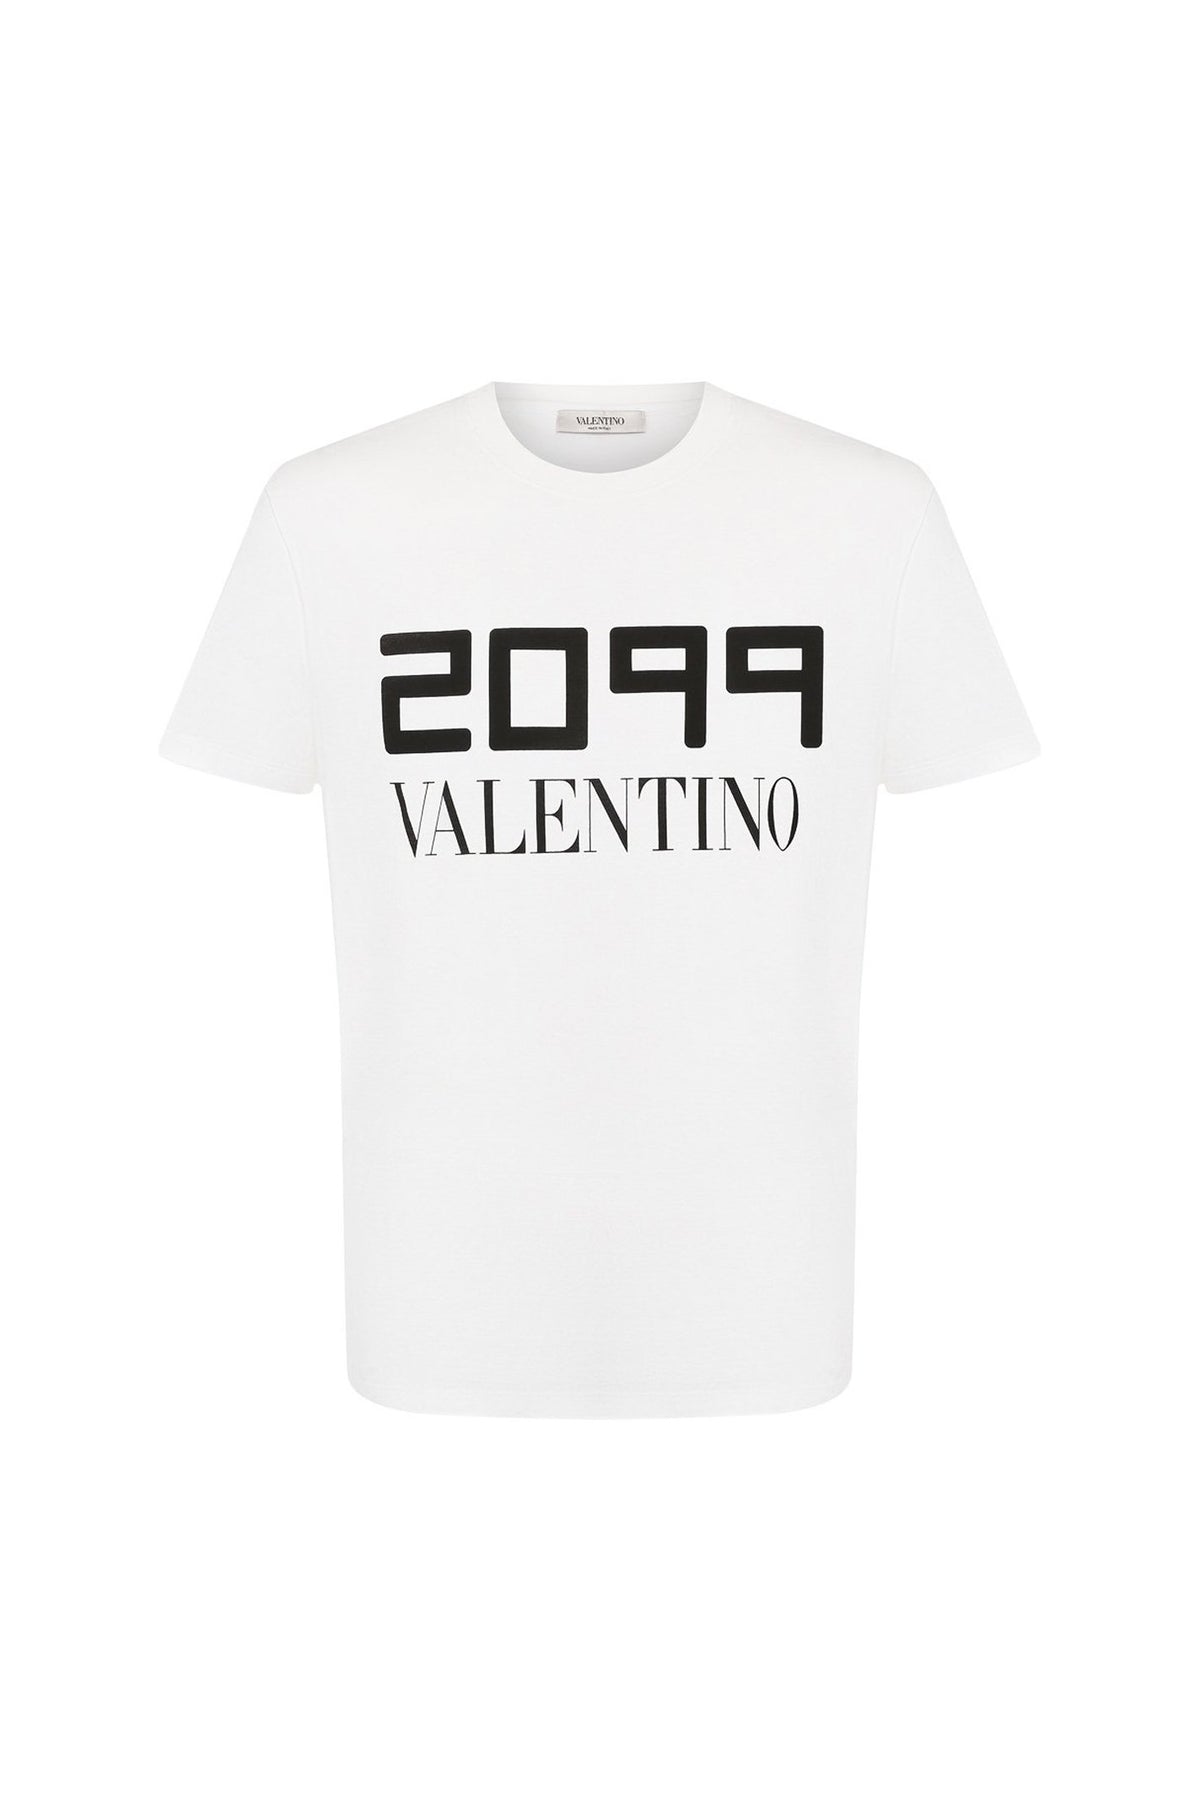 חולצה טי קצרה לוגו ולנטינו 2099 לבנה Valentino